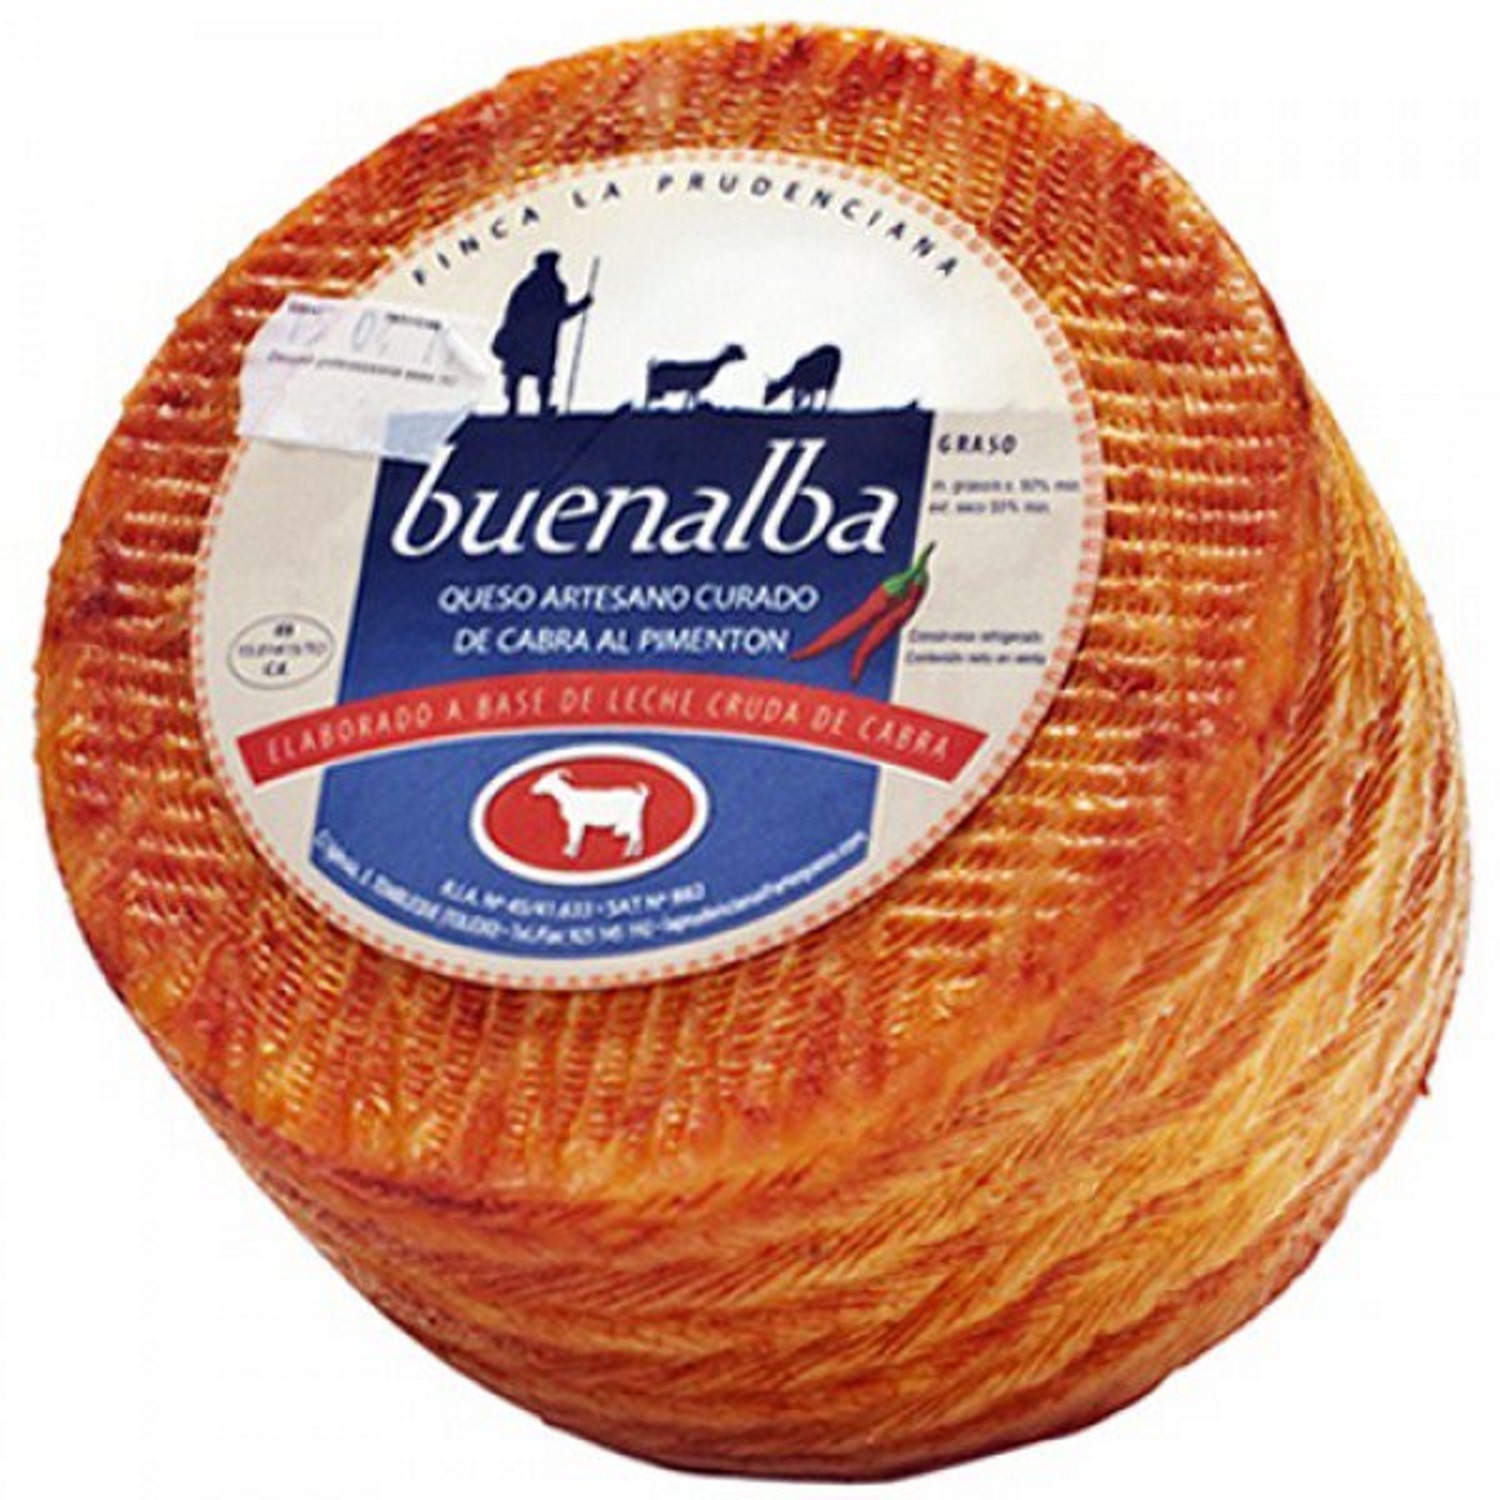 Gereifter Ziegenkäse mit Paprika von Buenalba ca. 3,2 kg - Artequeso